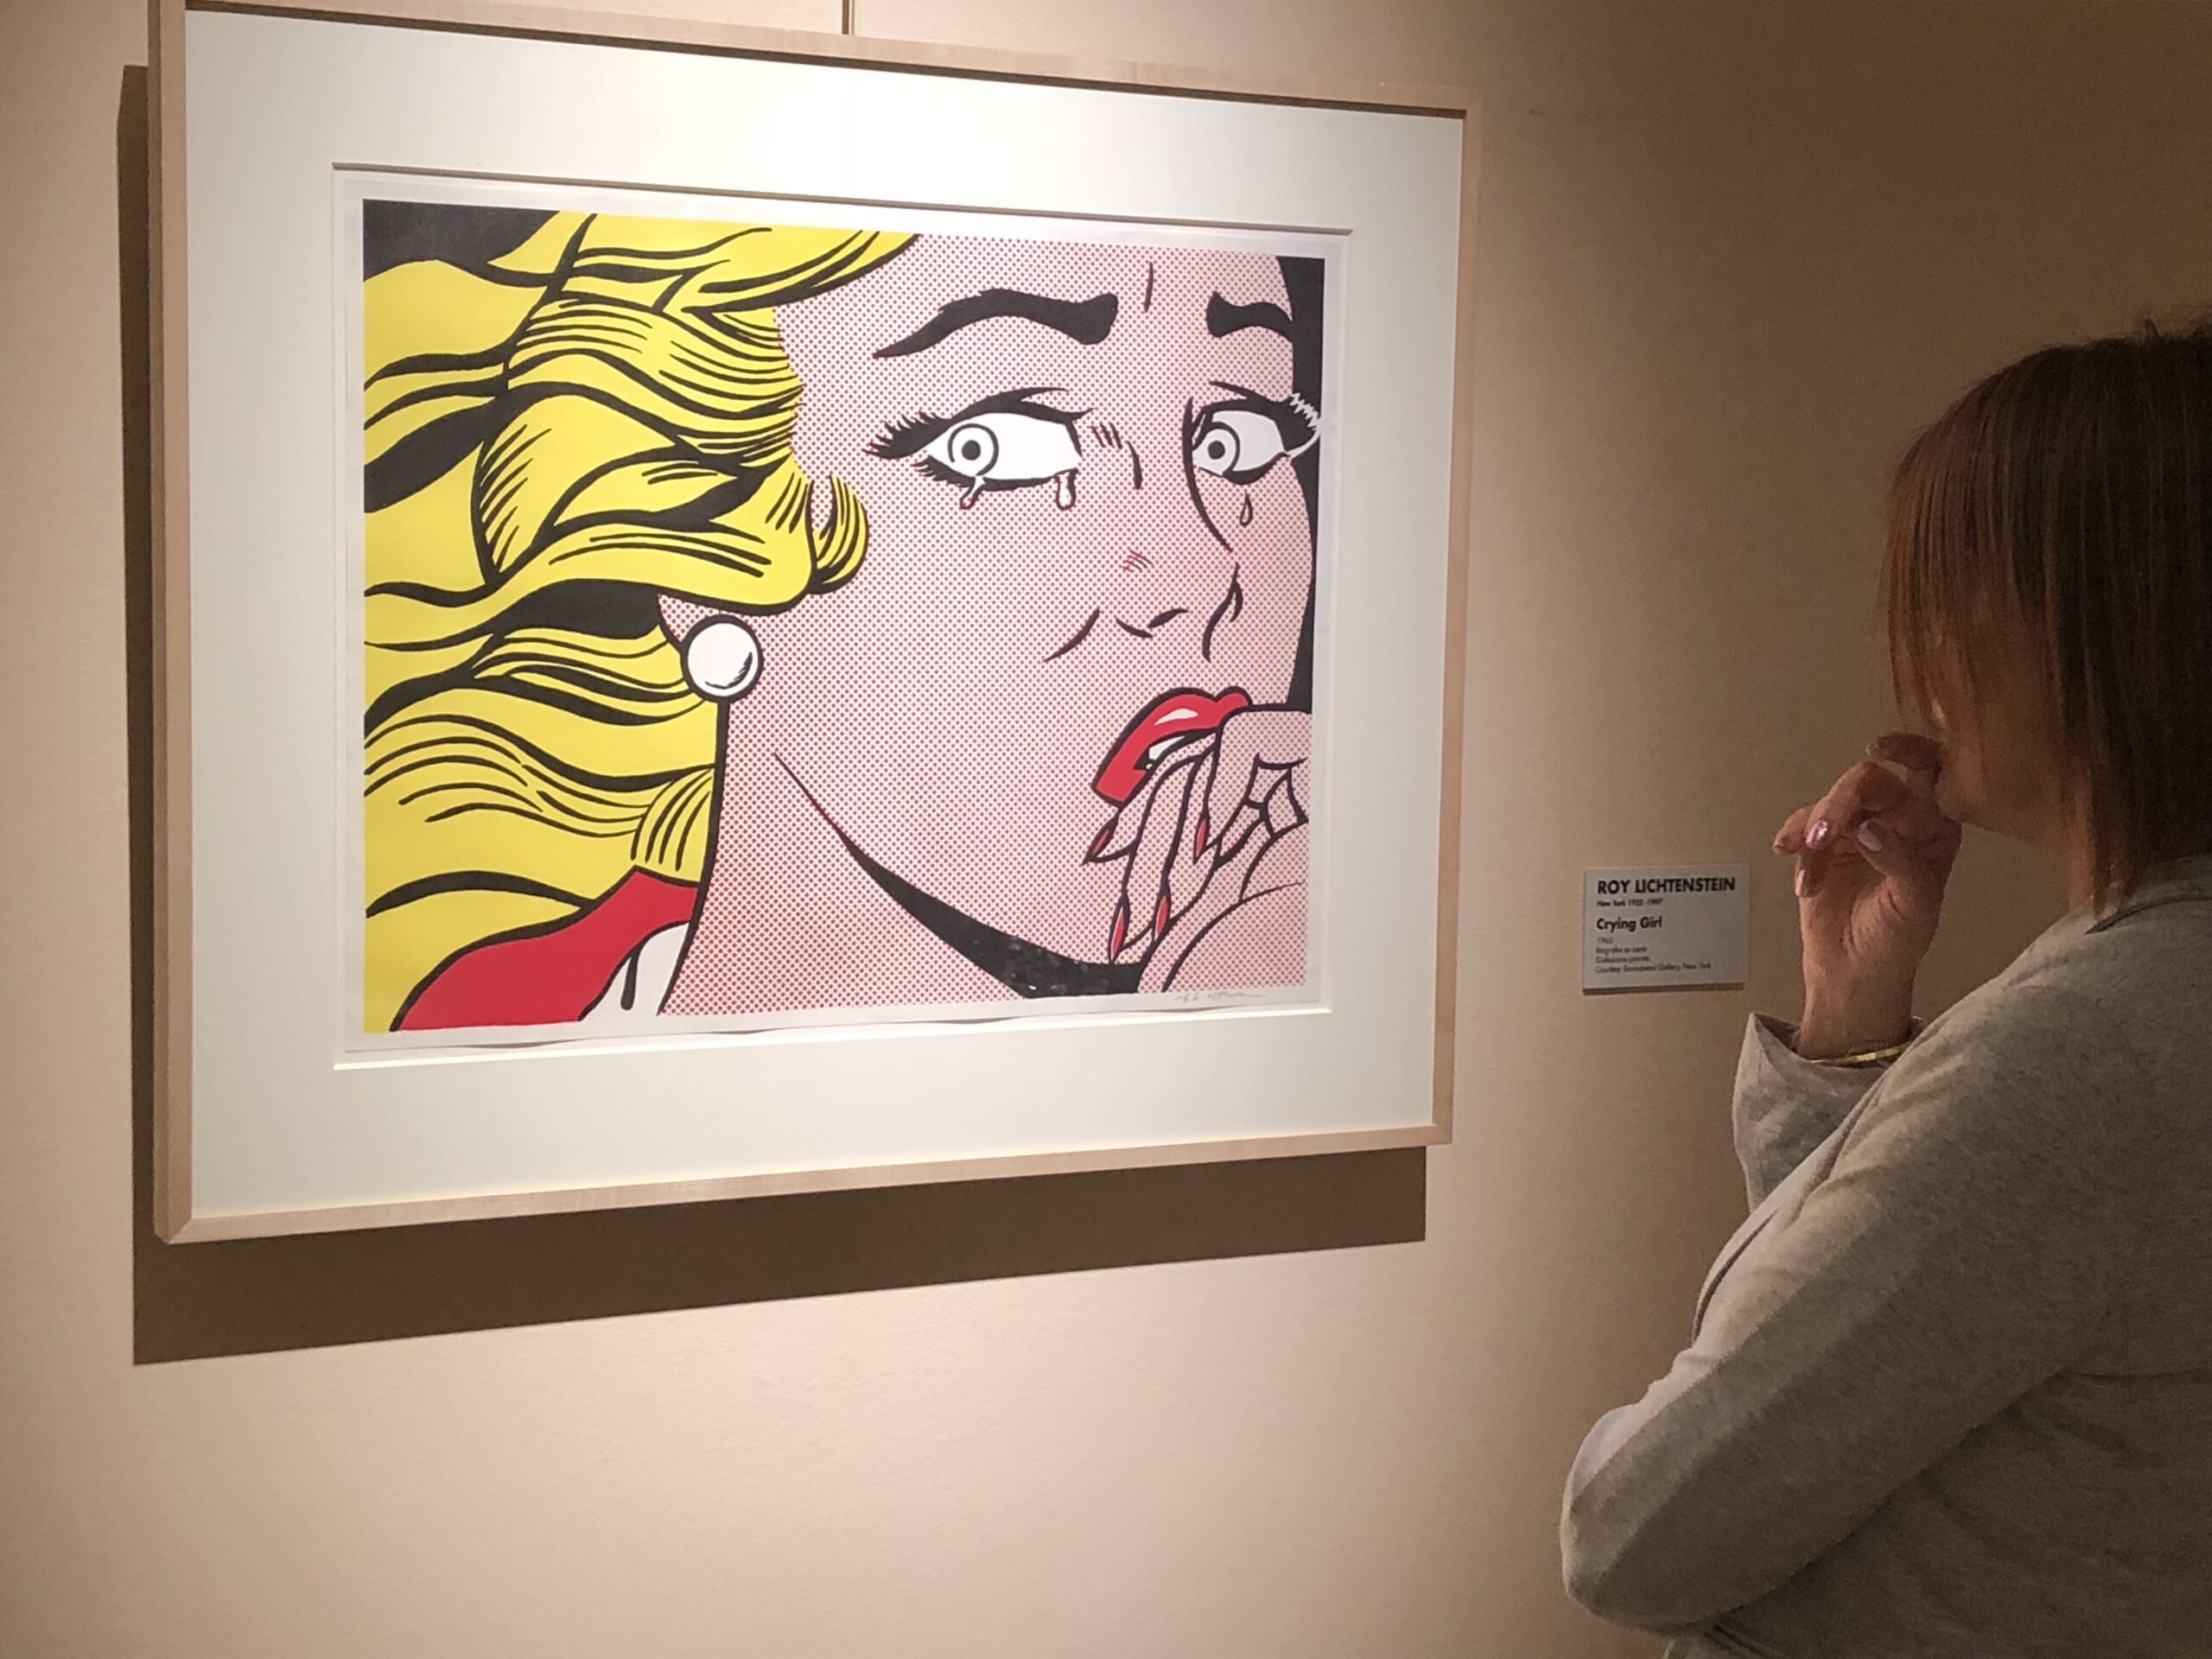 Roy Lichtenstein and American Pop Art